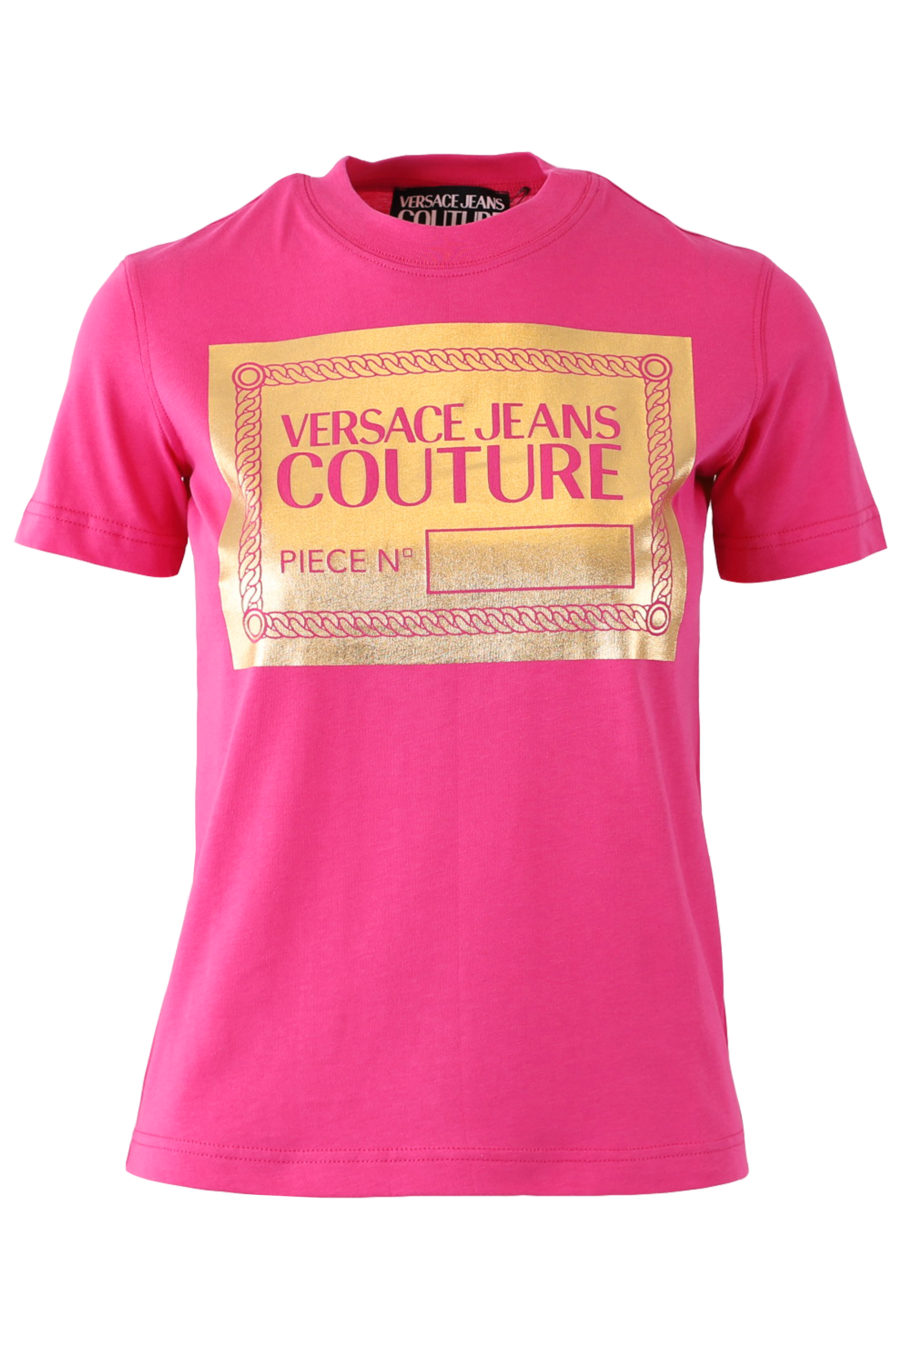 Rosa T-Shirt mit Golddruck - 53b0354d6cada366c6170e4f0b8ecdf84371b33a